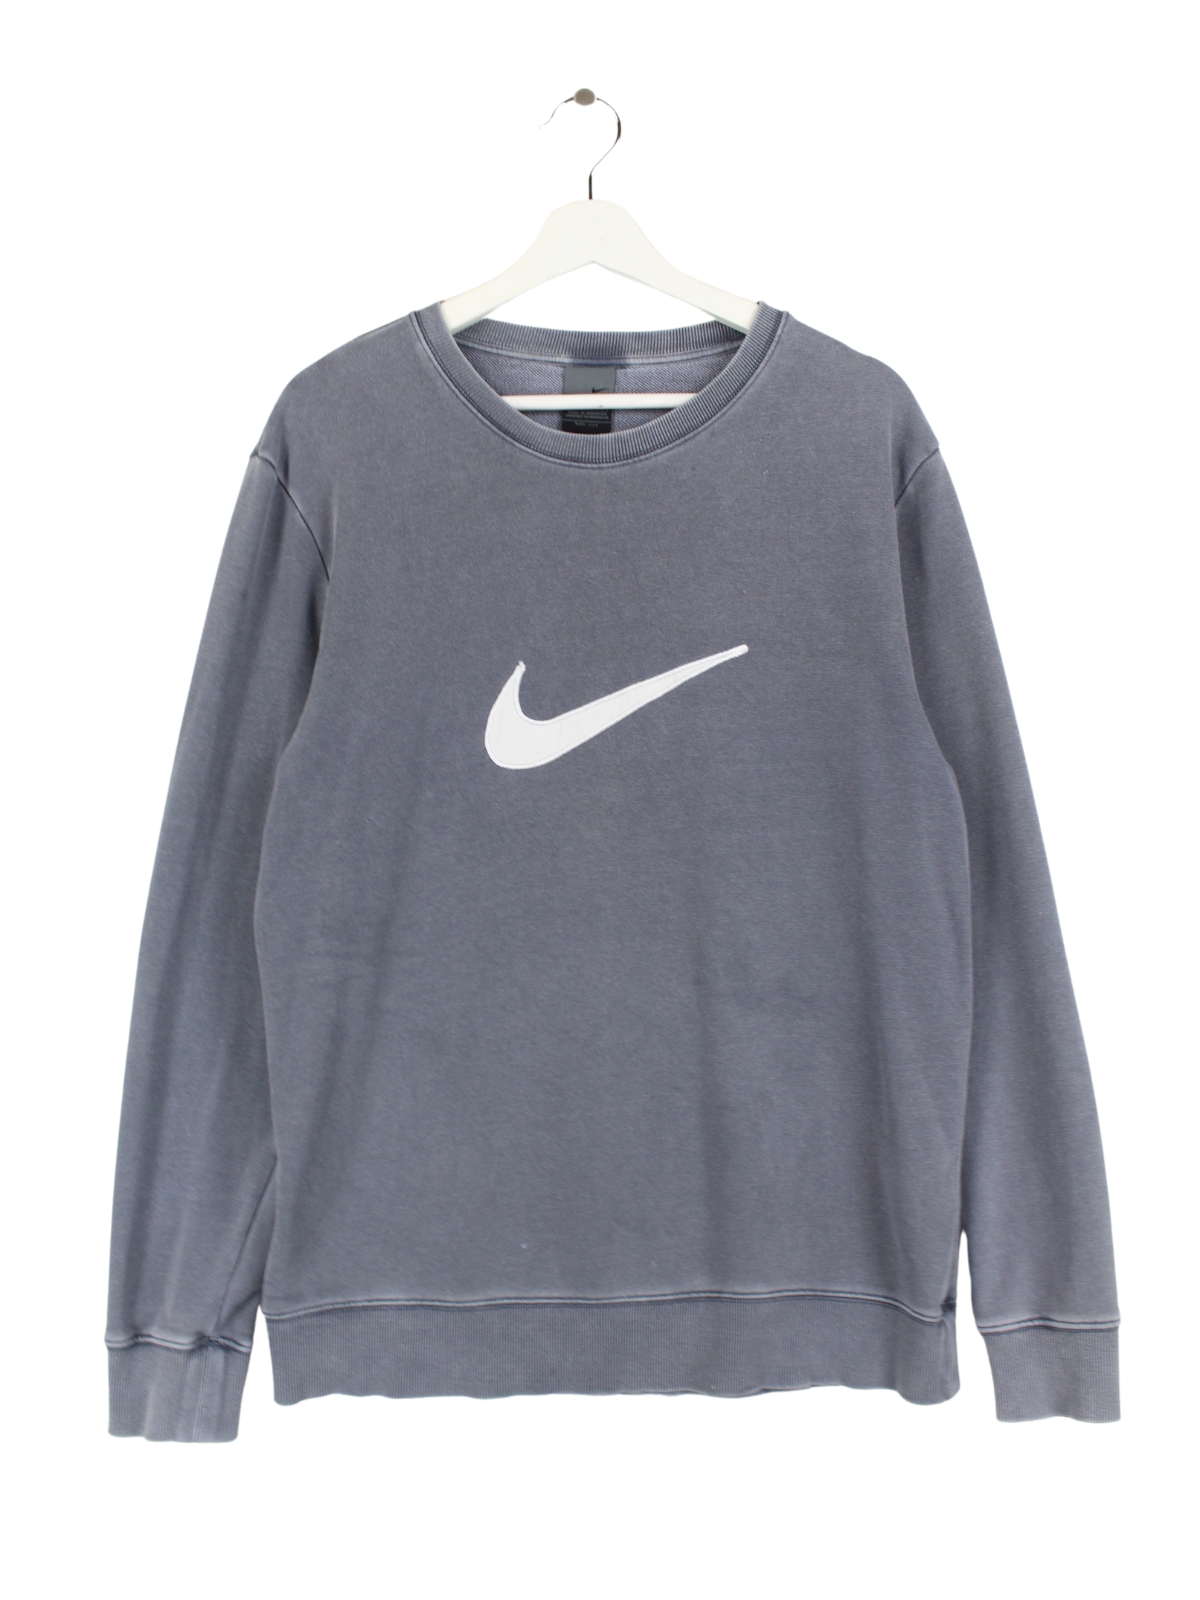 Nike Center Swoosh Sweater Grau L